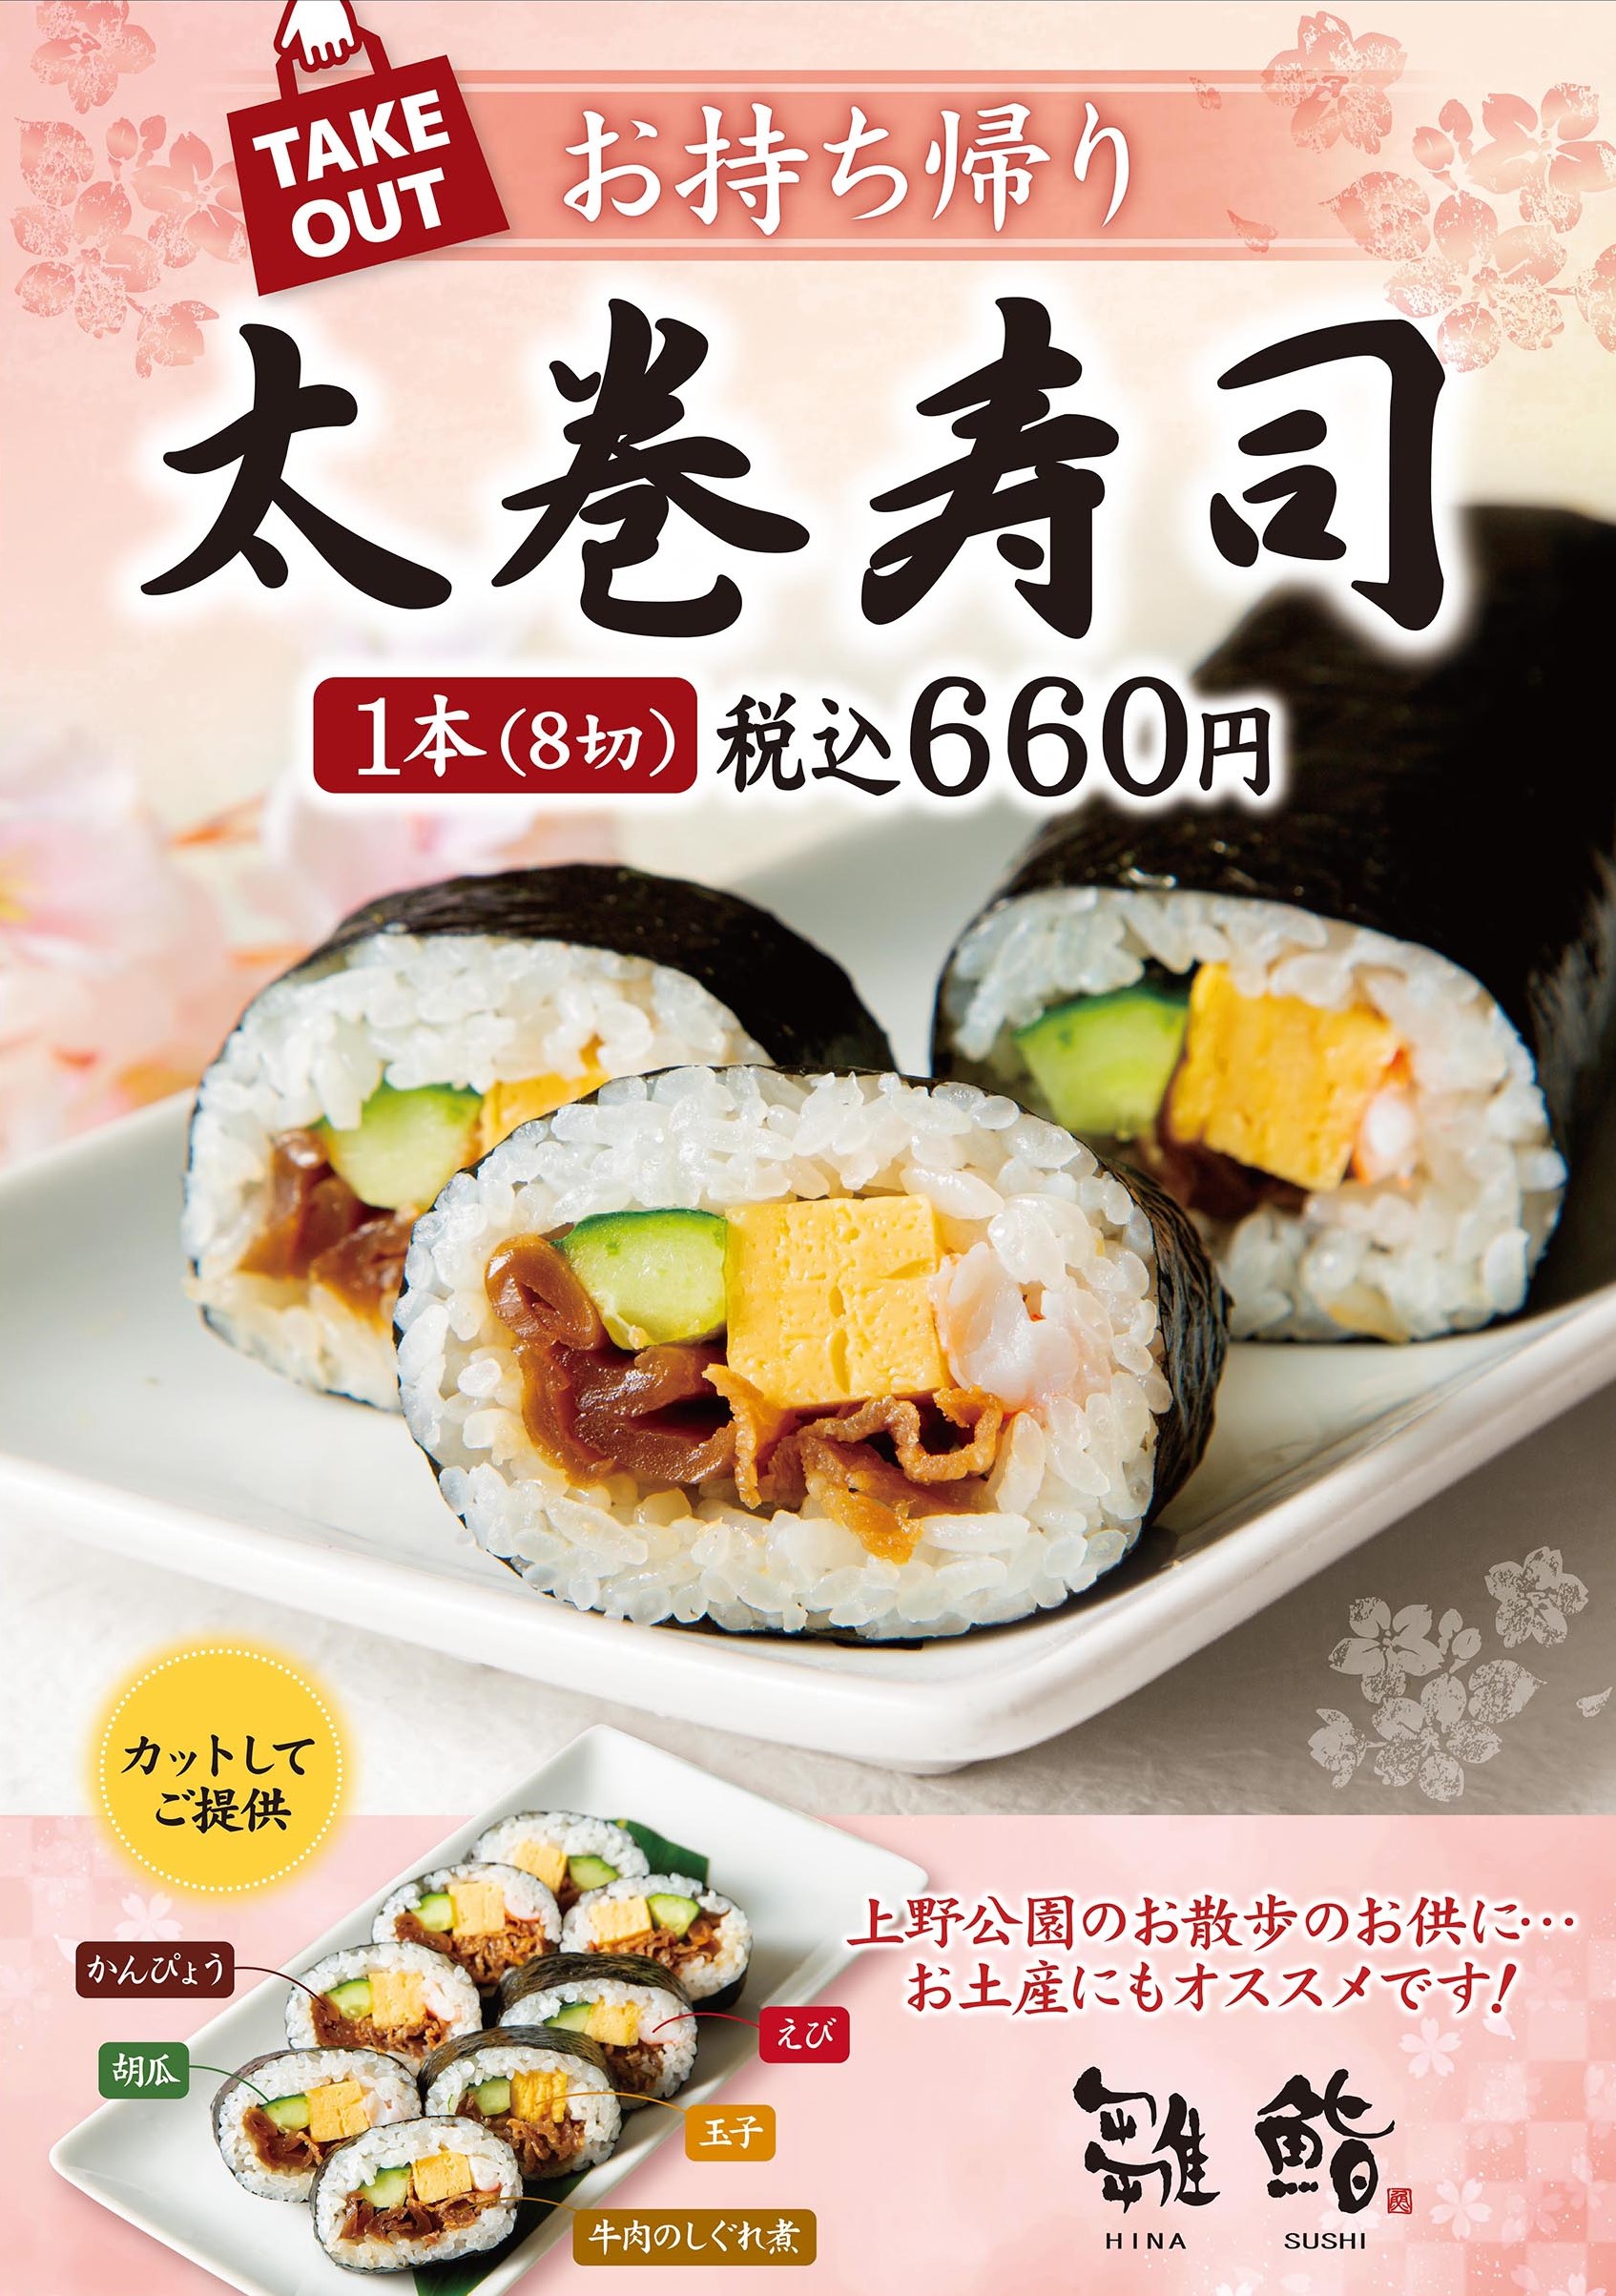 【TAKE-OUT】Only at Ueno no Mori Sakura Terrace store!  We start selling Futomaki Sushi!